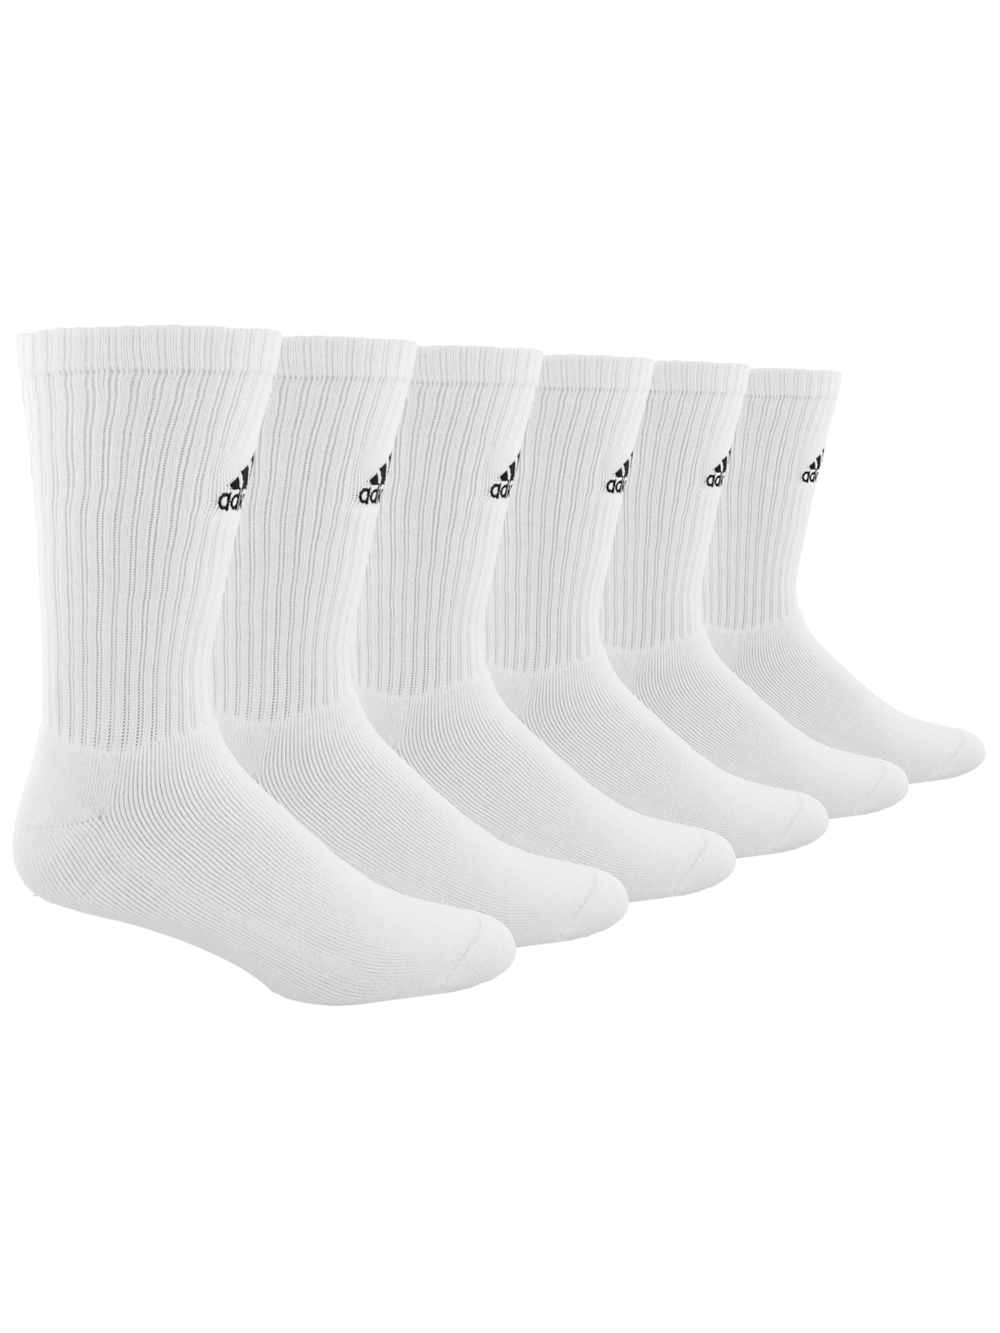 adidas team socks